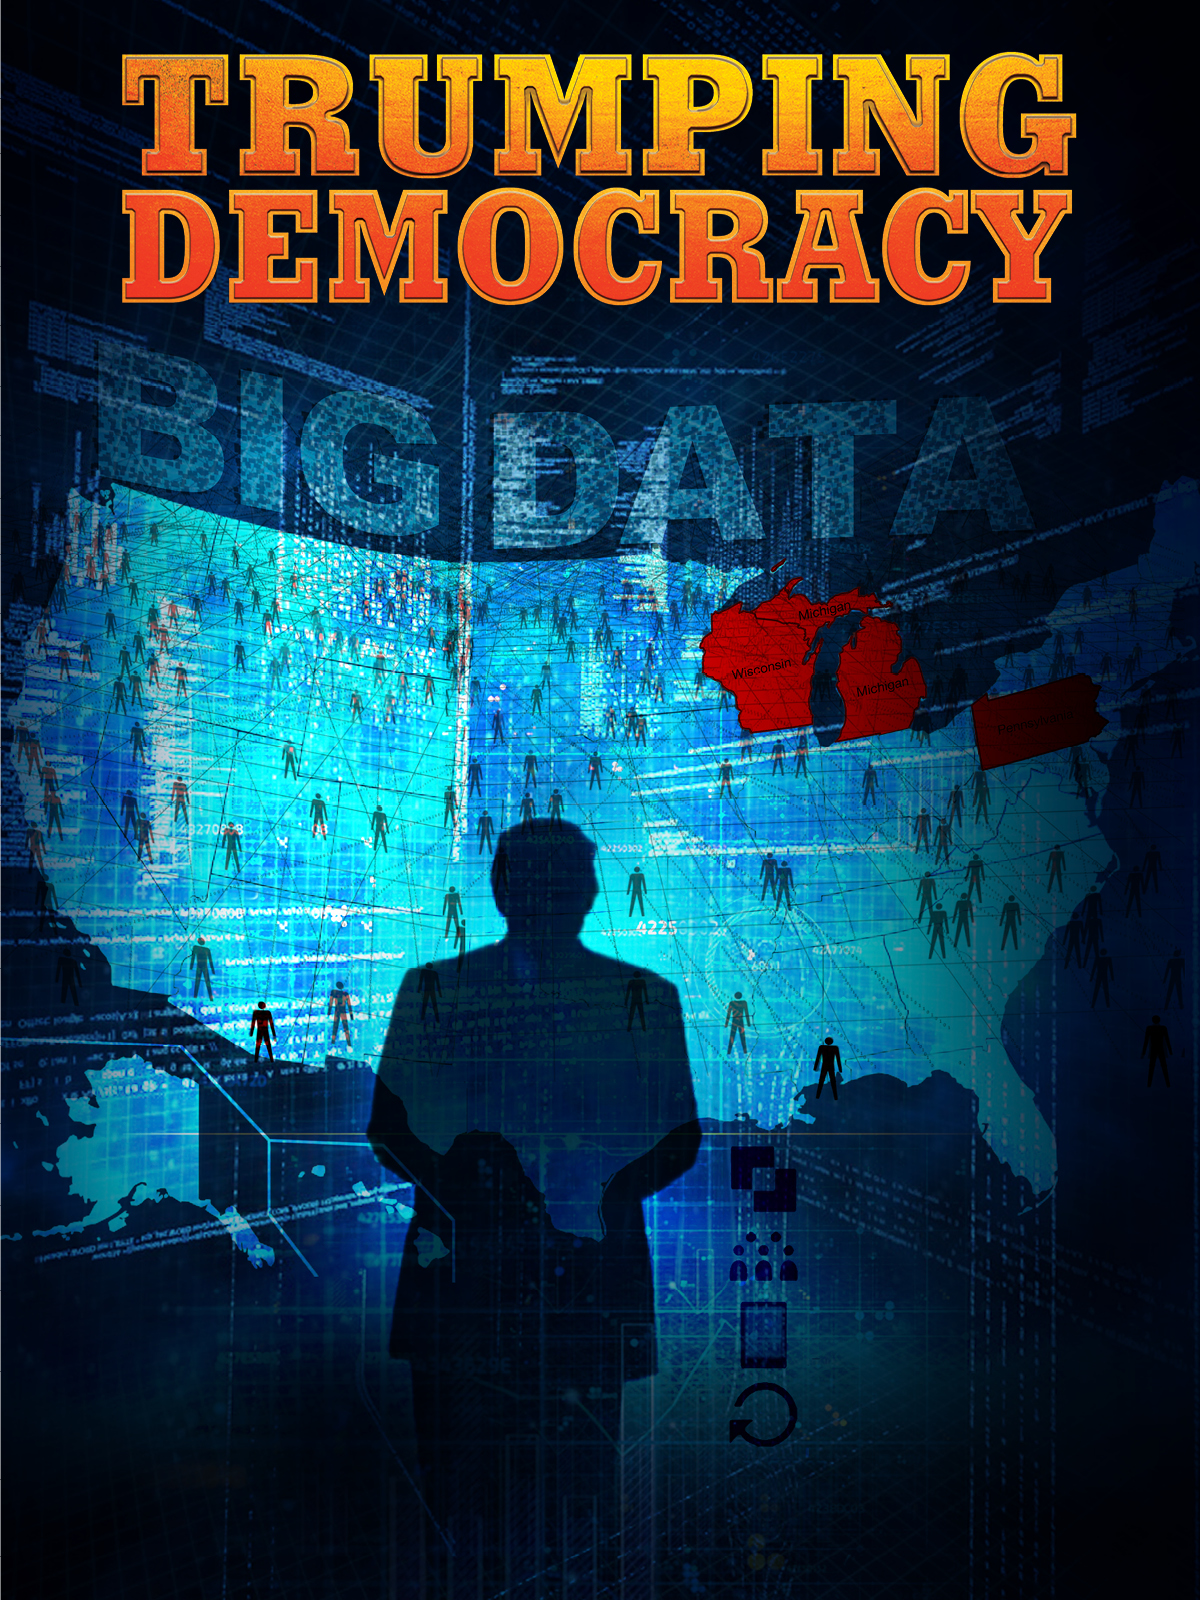 Nonton film Trumping Democracy layarkaca21 indoxx1 ganool online streaming terbaru